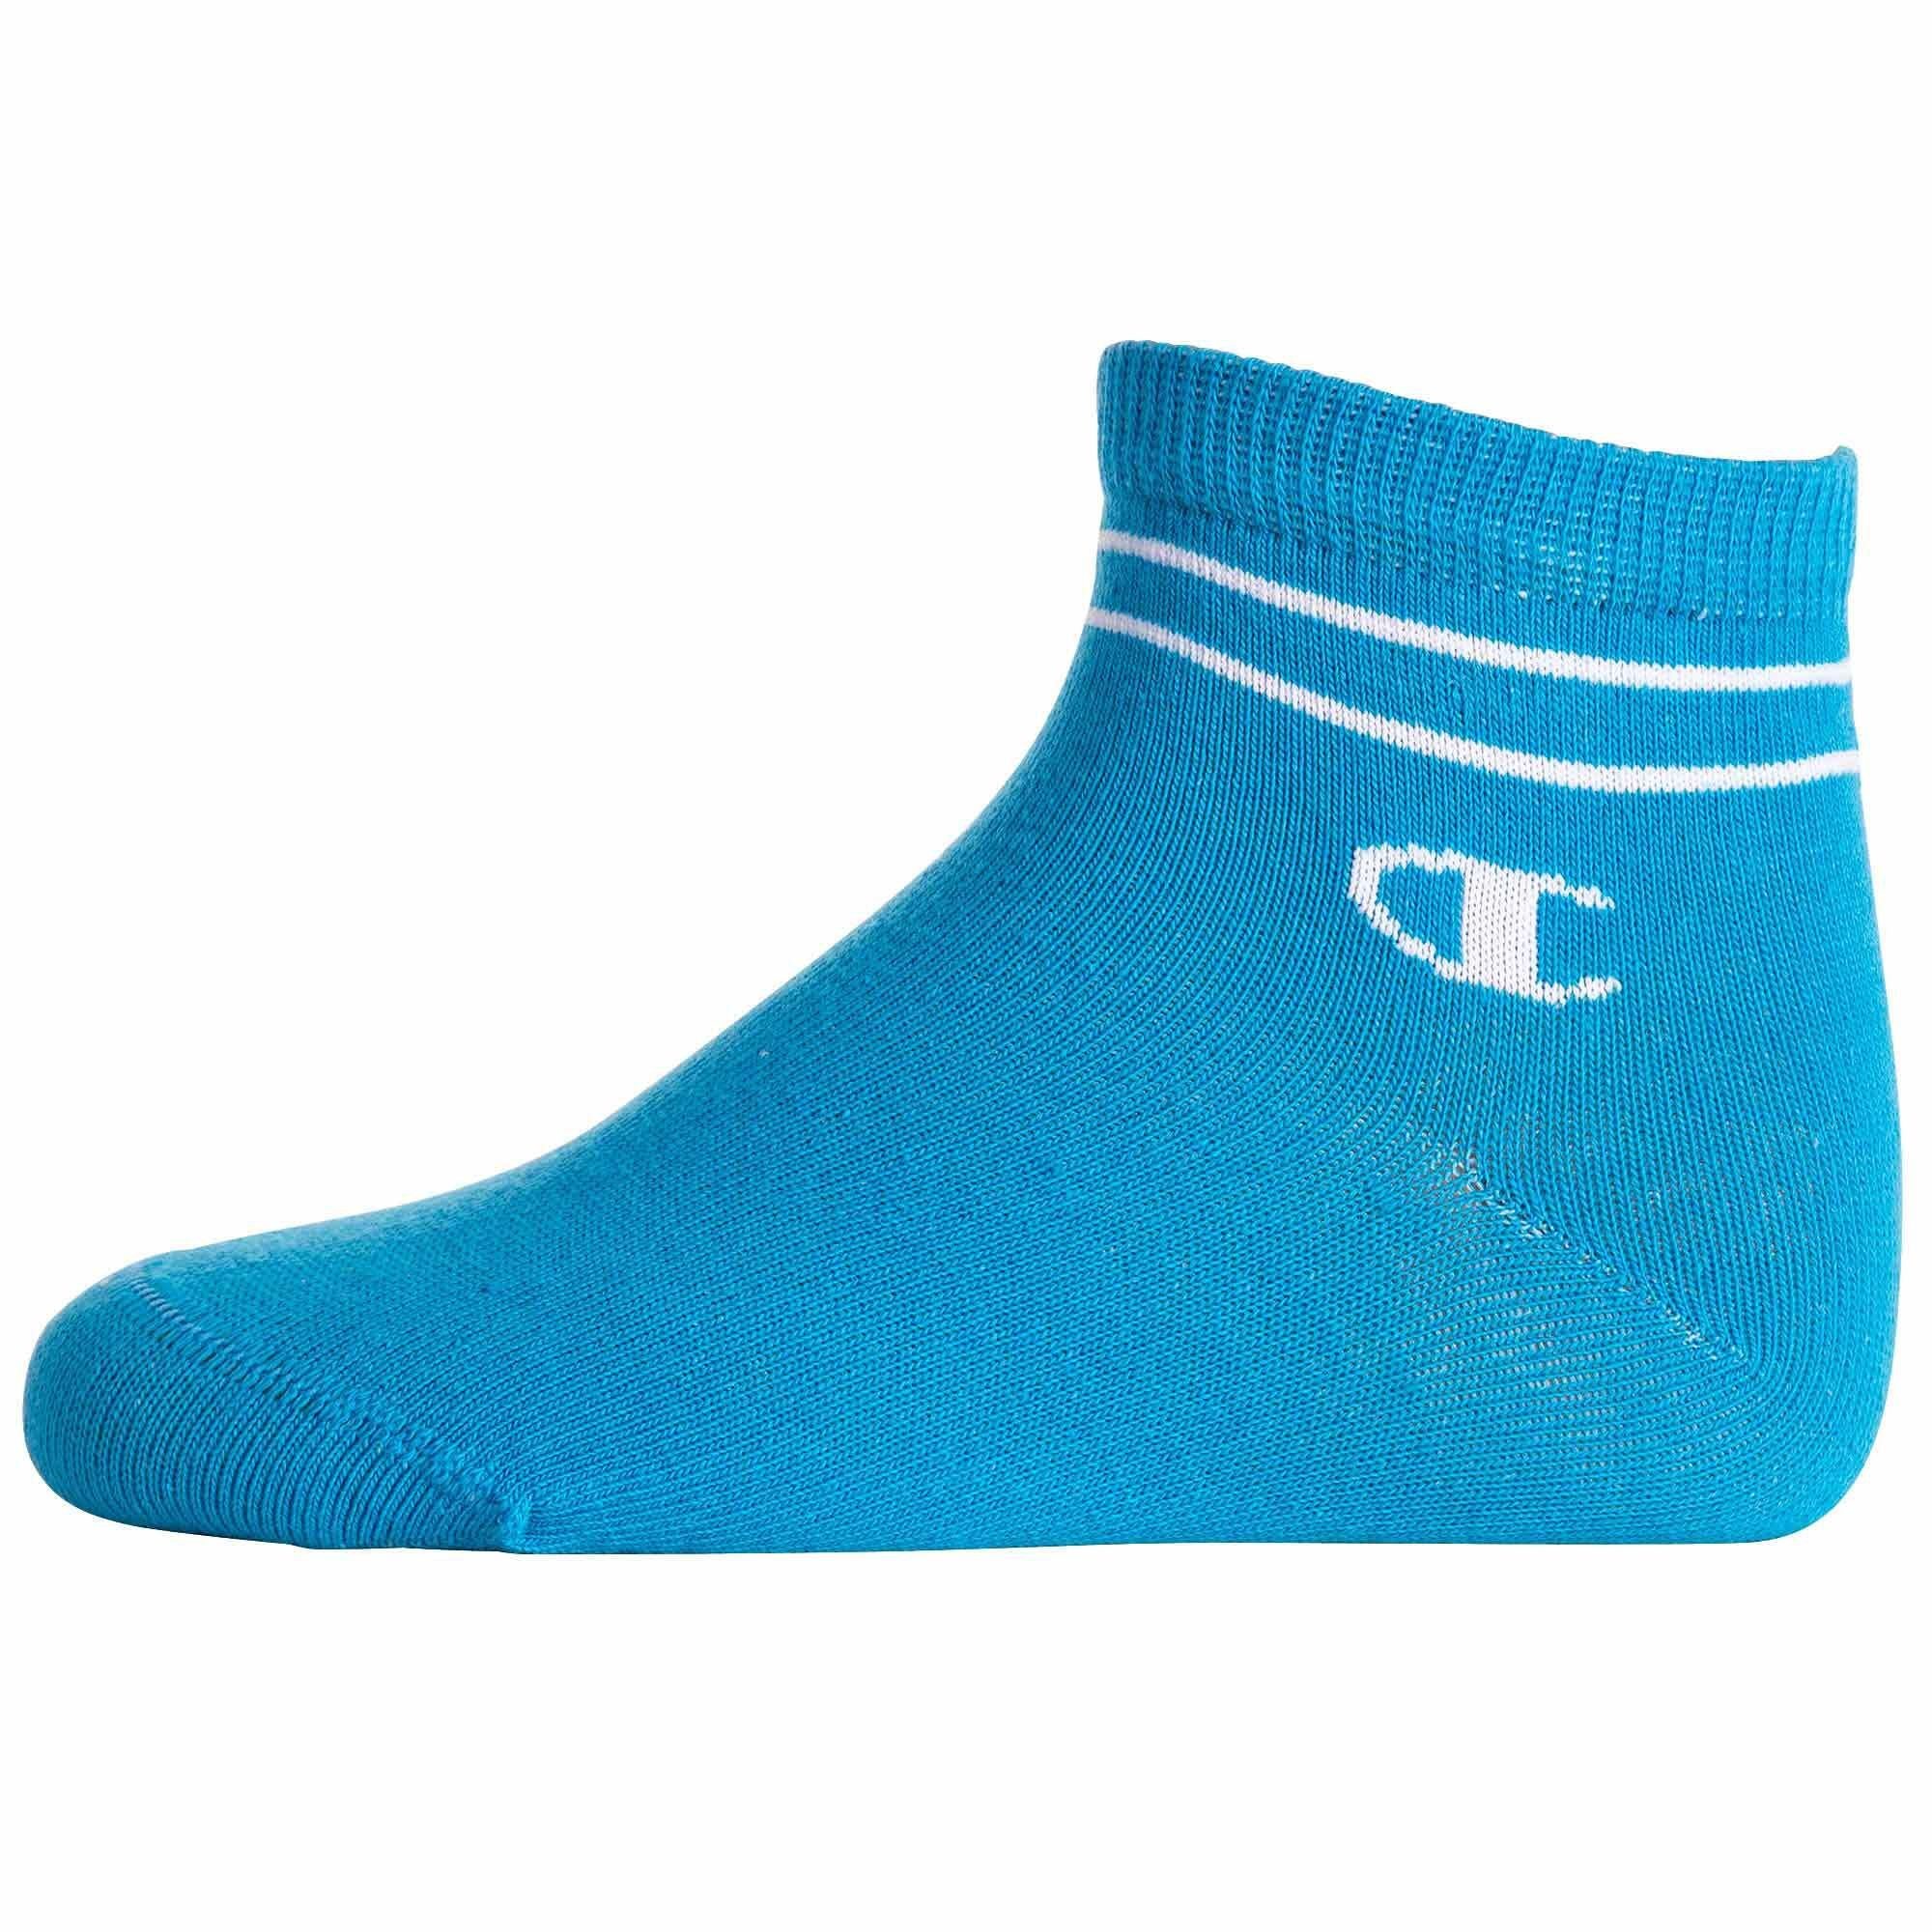 Champion Freizeitsocken Kinder Quarter - Mehrfarbig 2 Socken Paar Socken, 7 Unisex